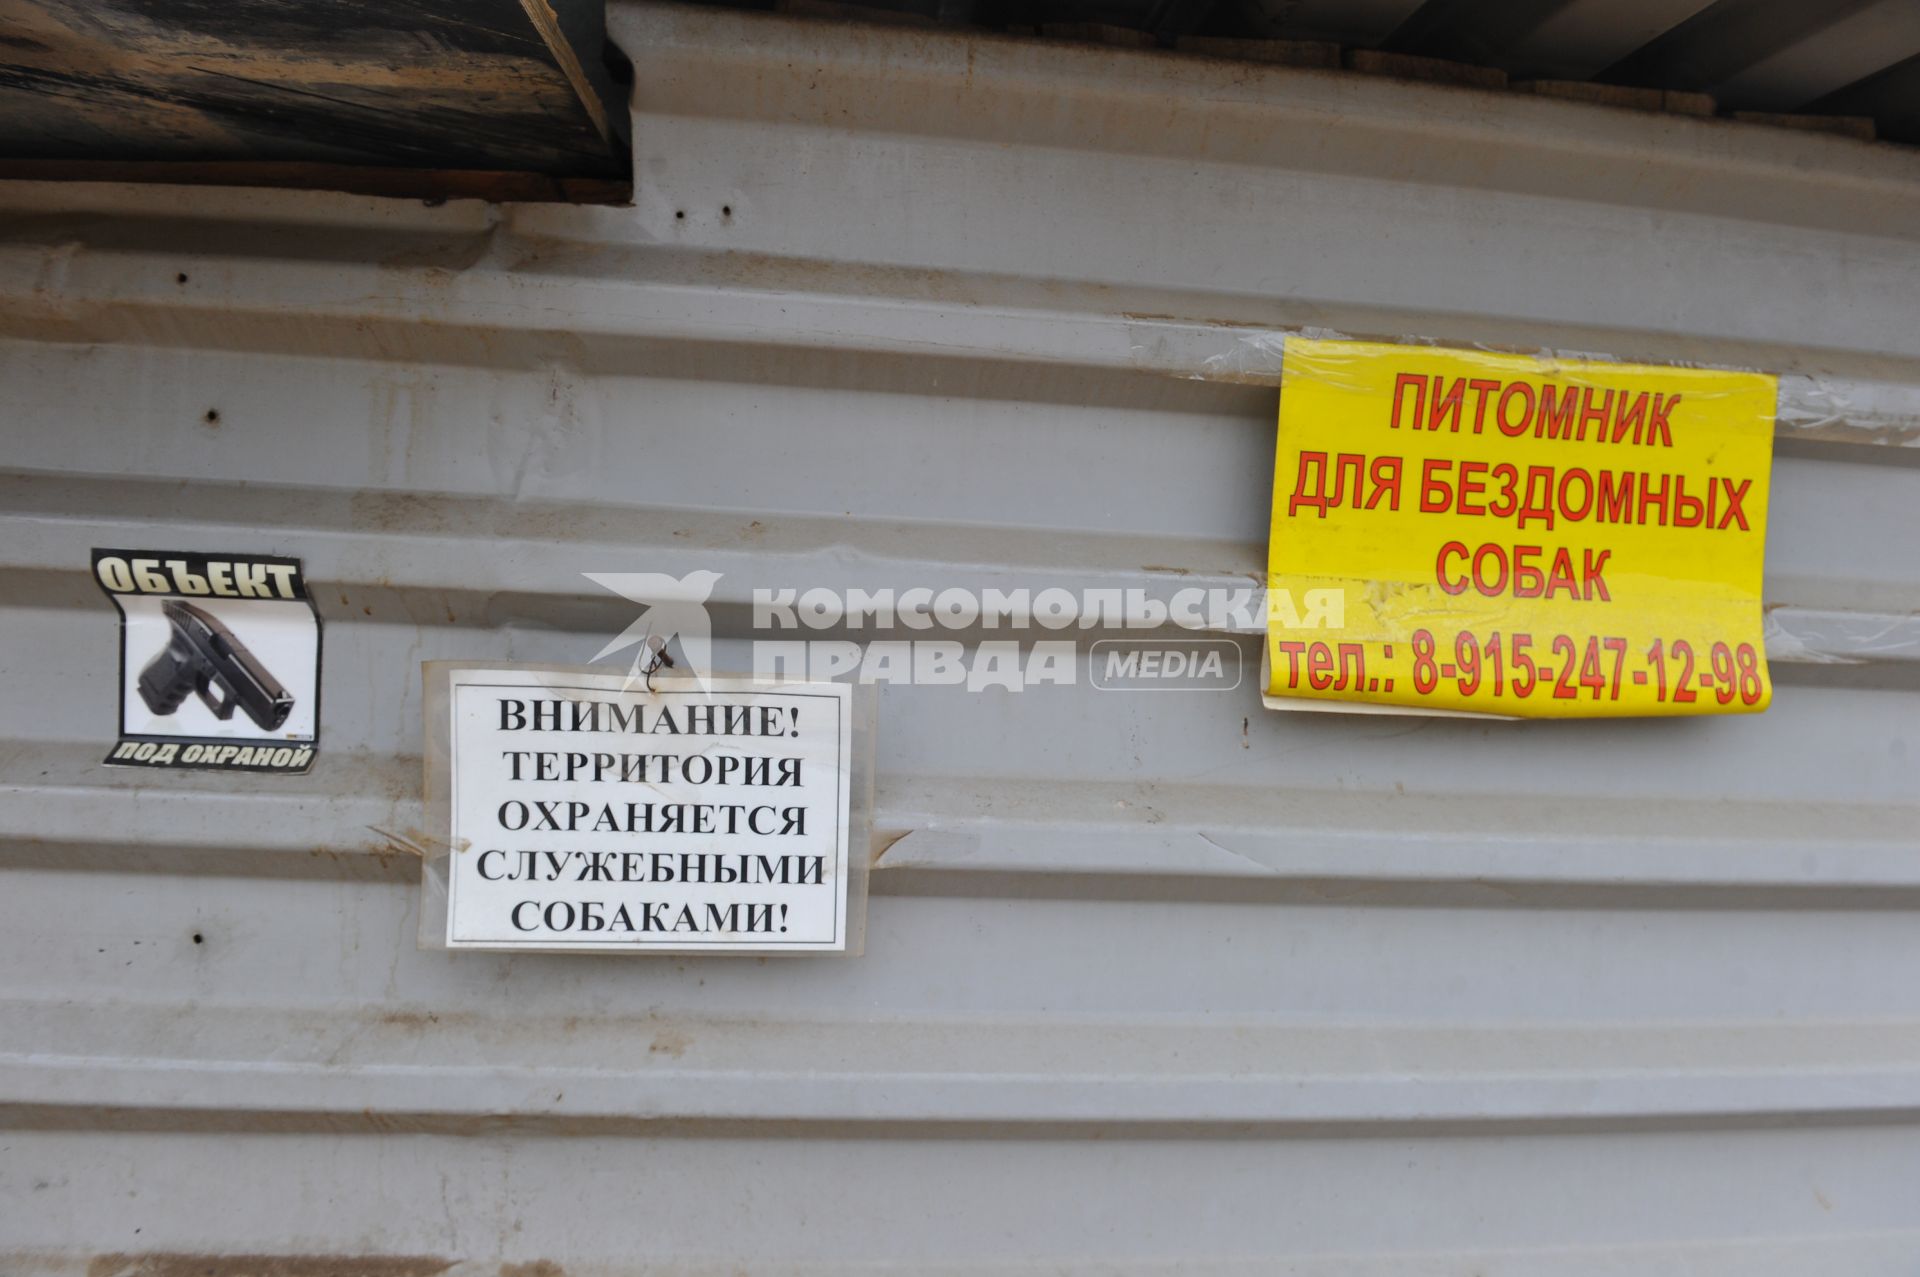 Питомник для бездомных собак и кошек в городе Пушкино. На снимке: табличка `Территория охраняется служебными собаками`.